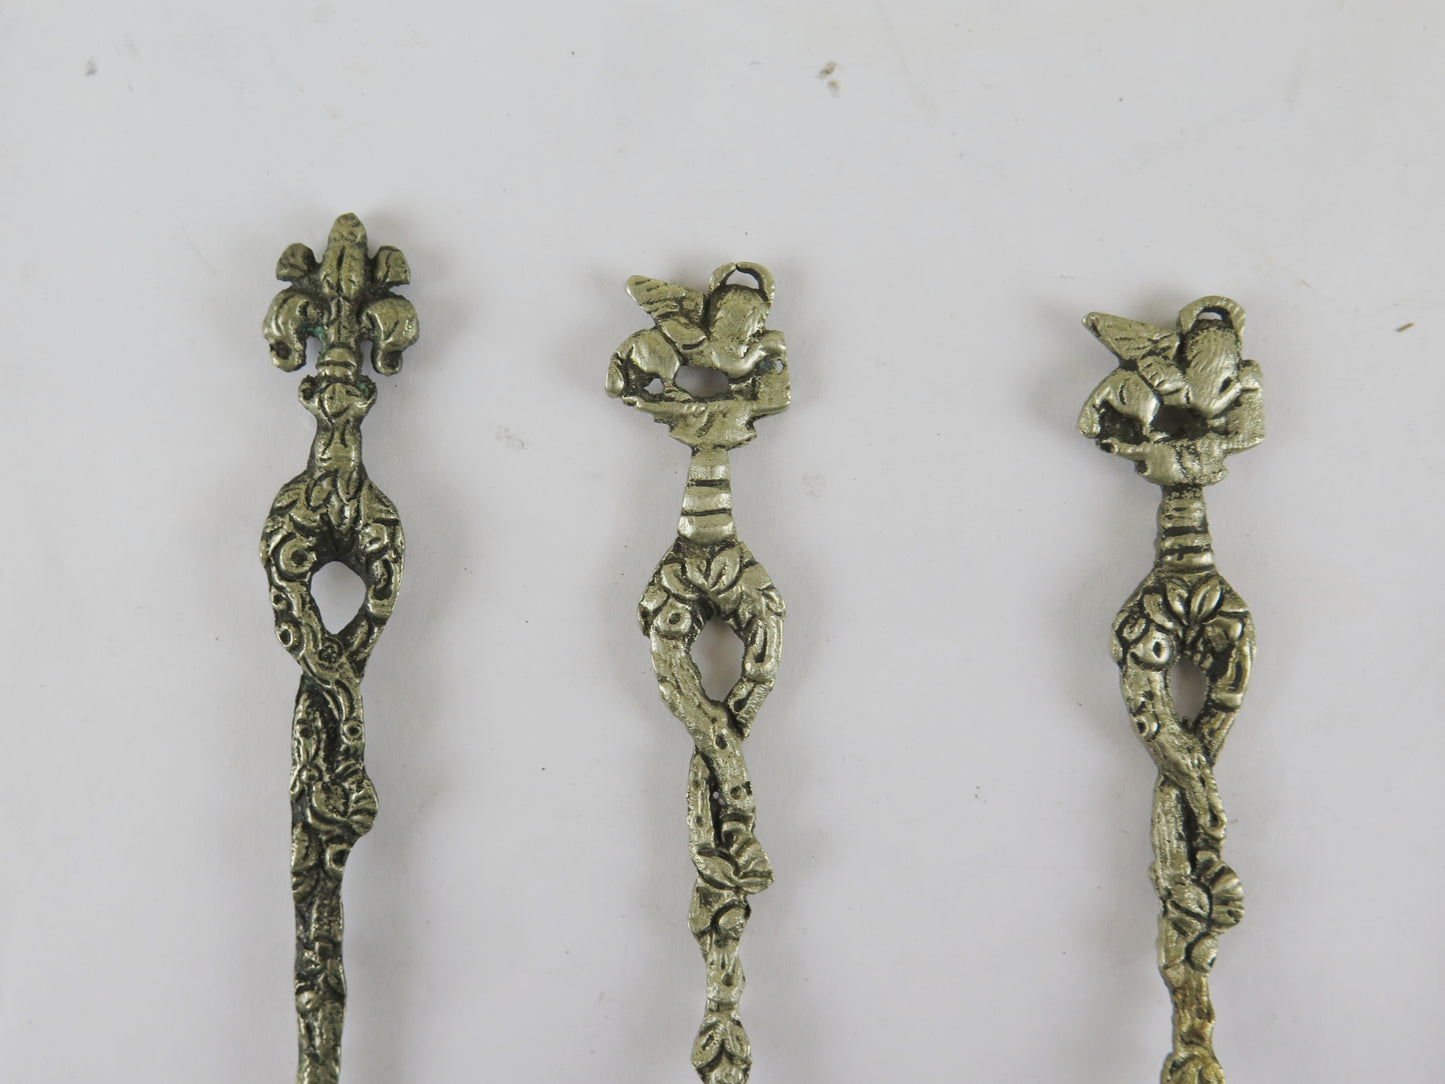 7 cucchiaini antichi venezia leone san marco ed uno giglio di firenze vs8